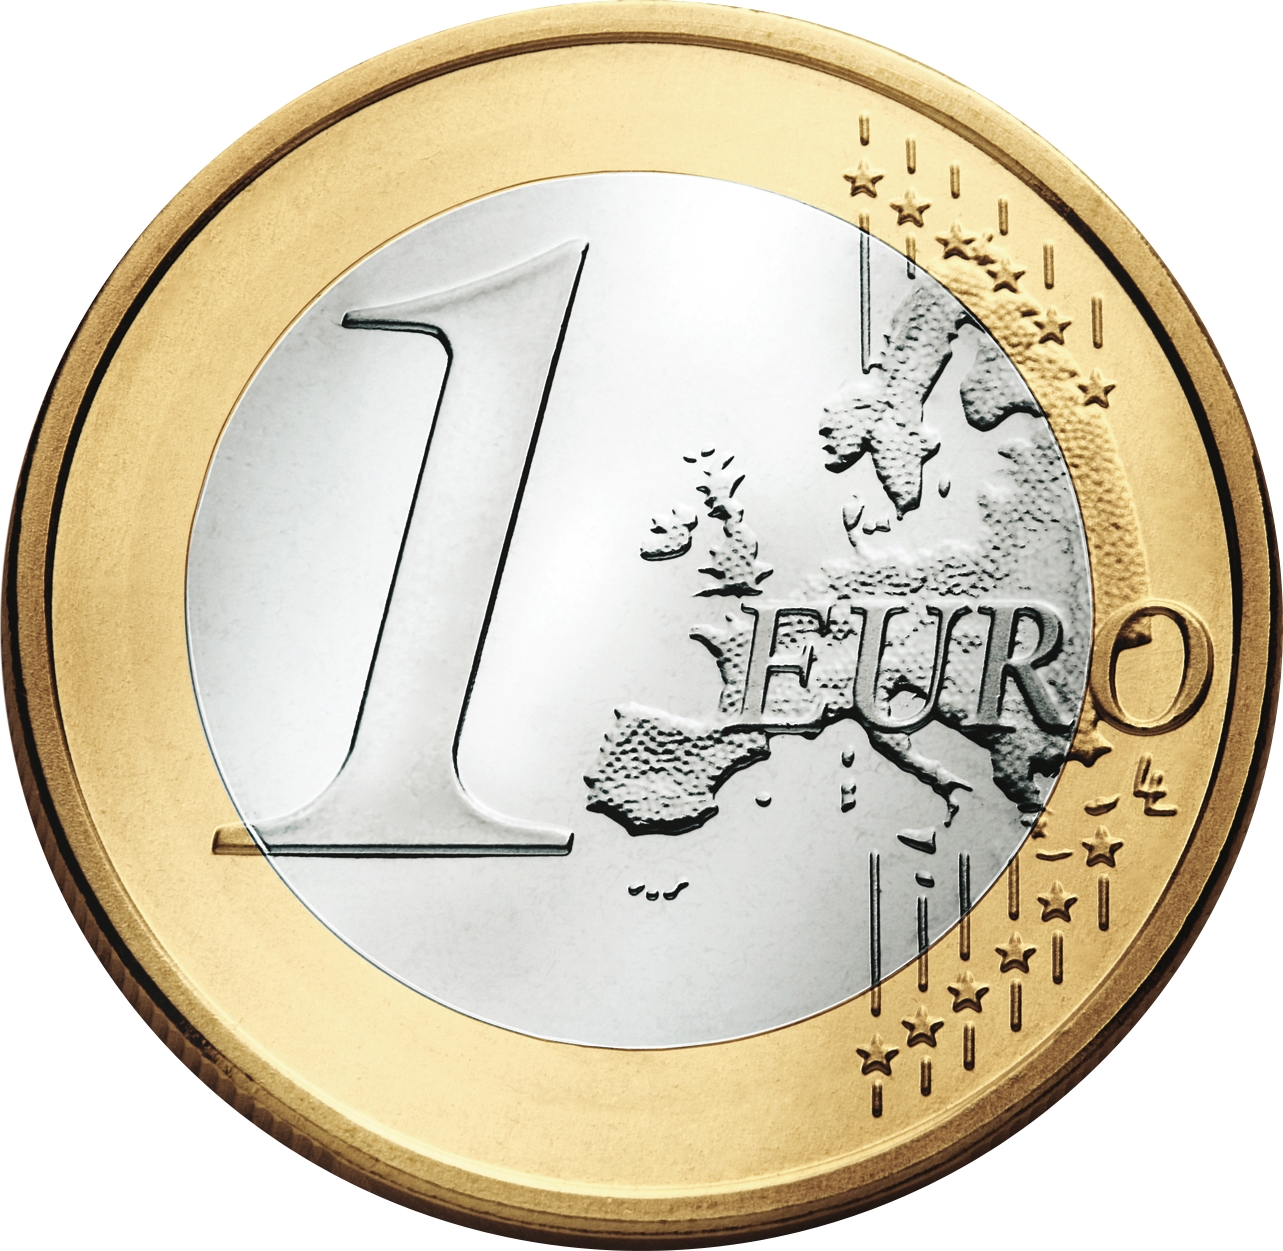 EURO caractéristiques techniques des pièces de 2 euros tous pays (diamètre,  poids, matériaux, )